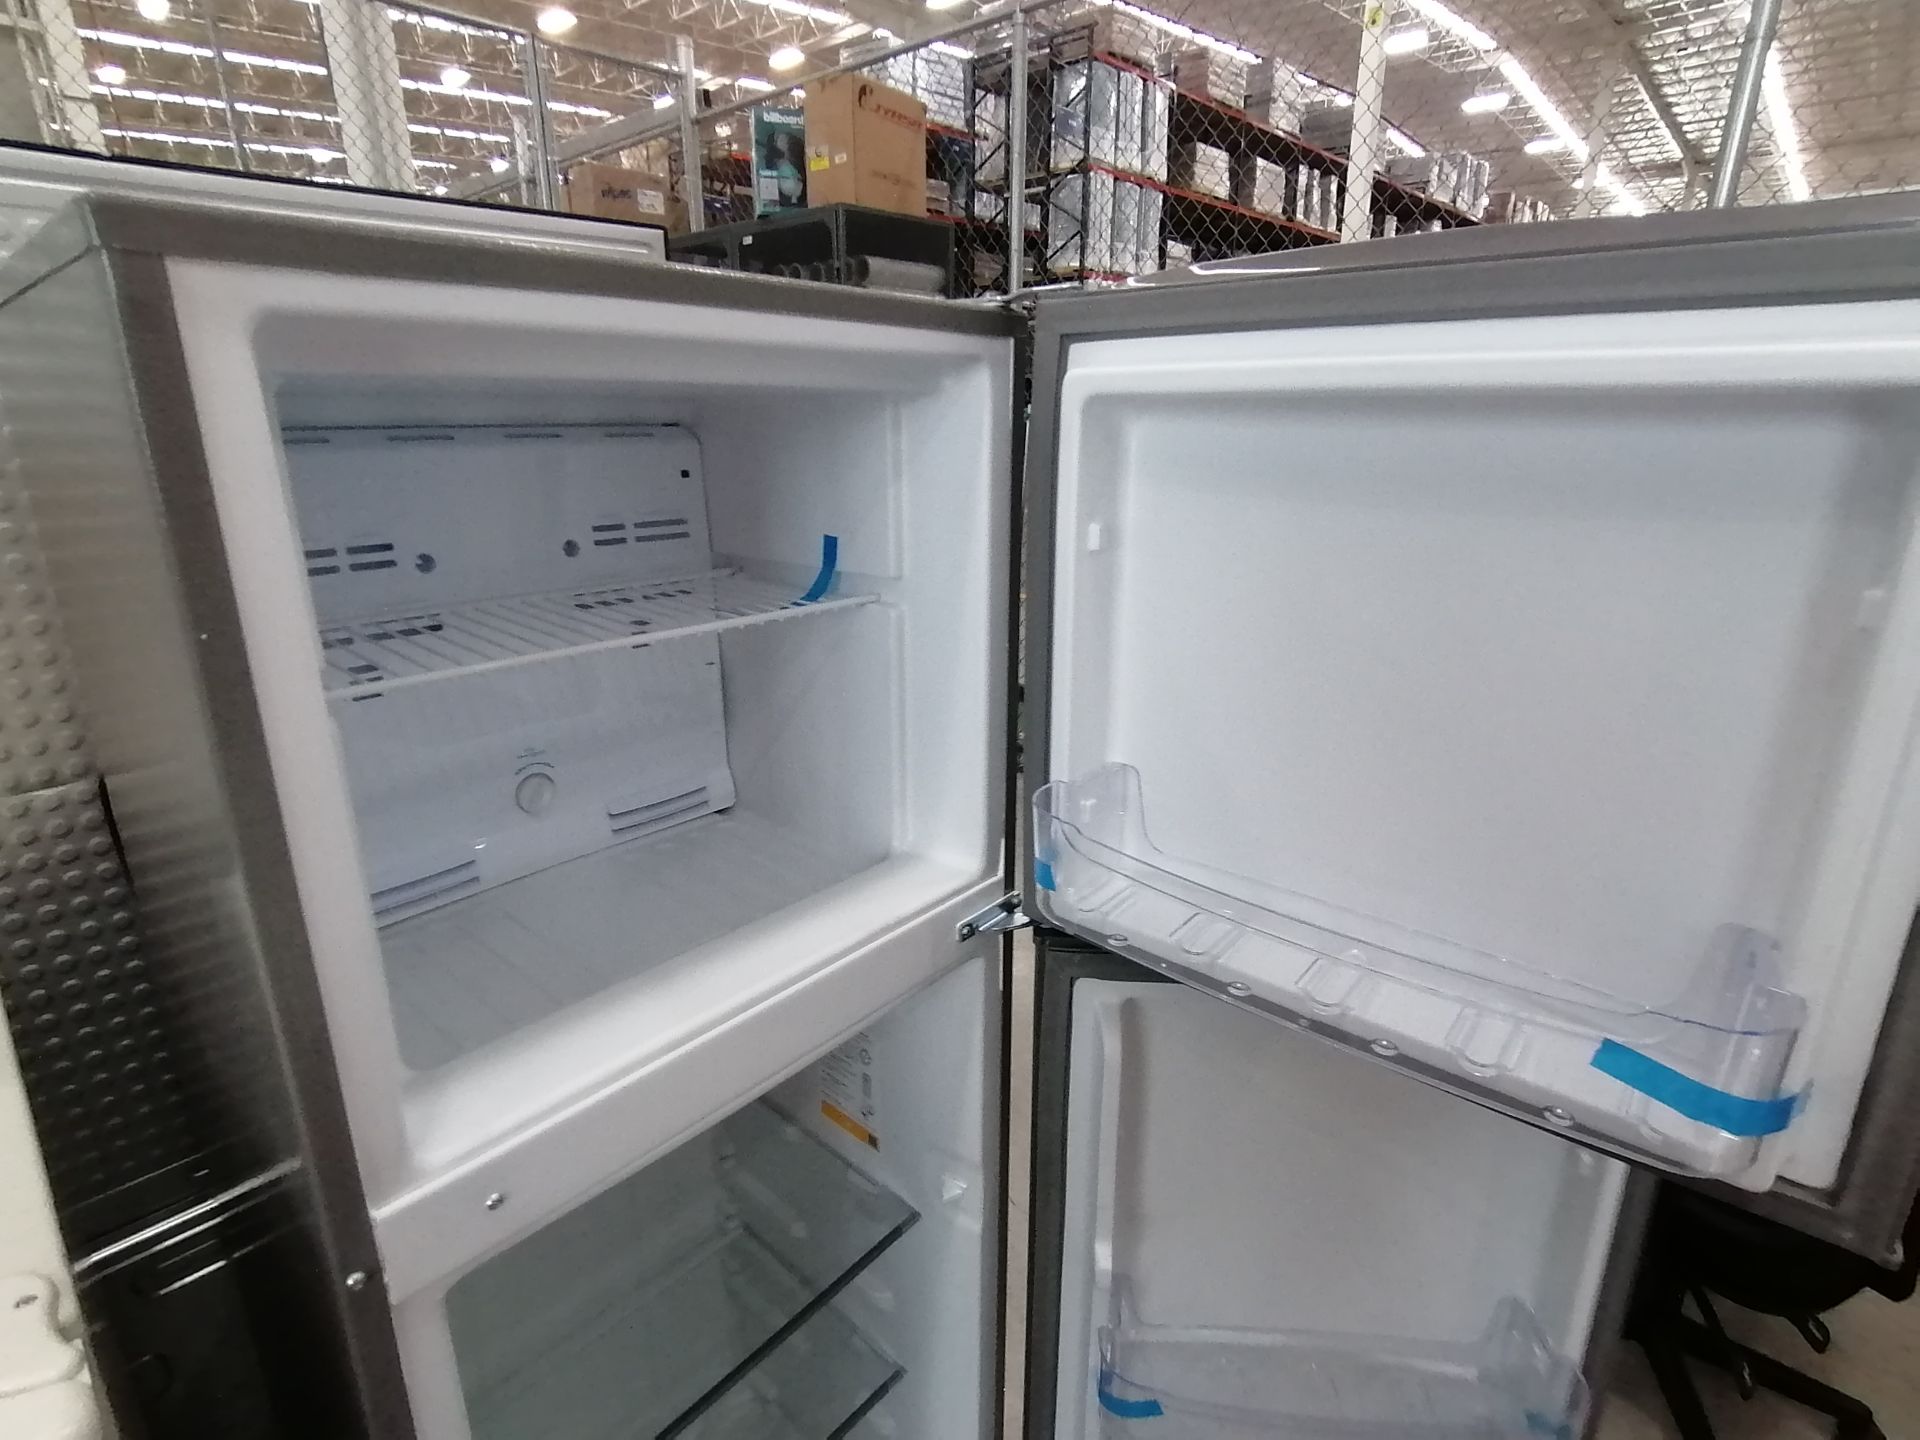 1 Refrigerador Marca Acros, Modelo ERT07TXLT, Serie VRA4436928, Color Blanco, Golpeado, Favor de in - Image 8 of 14